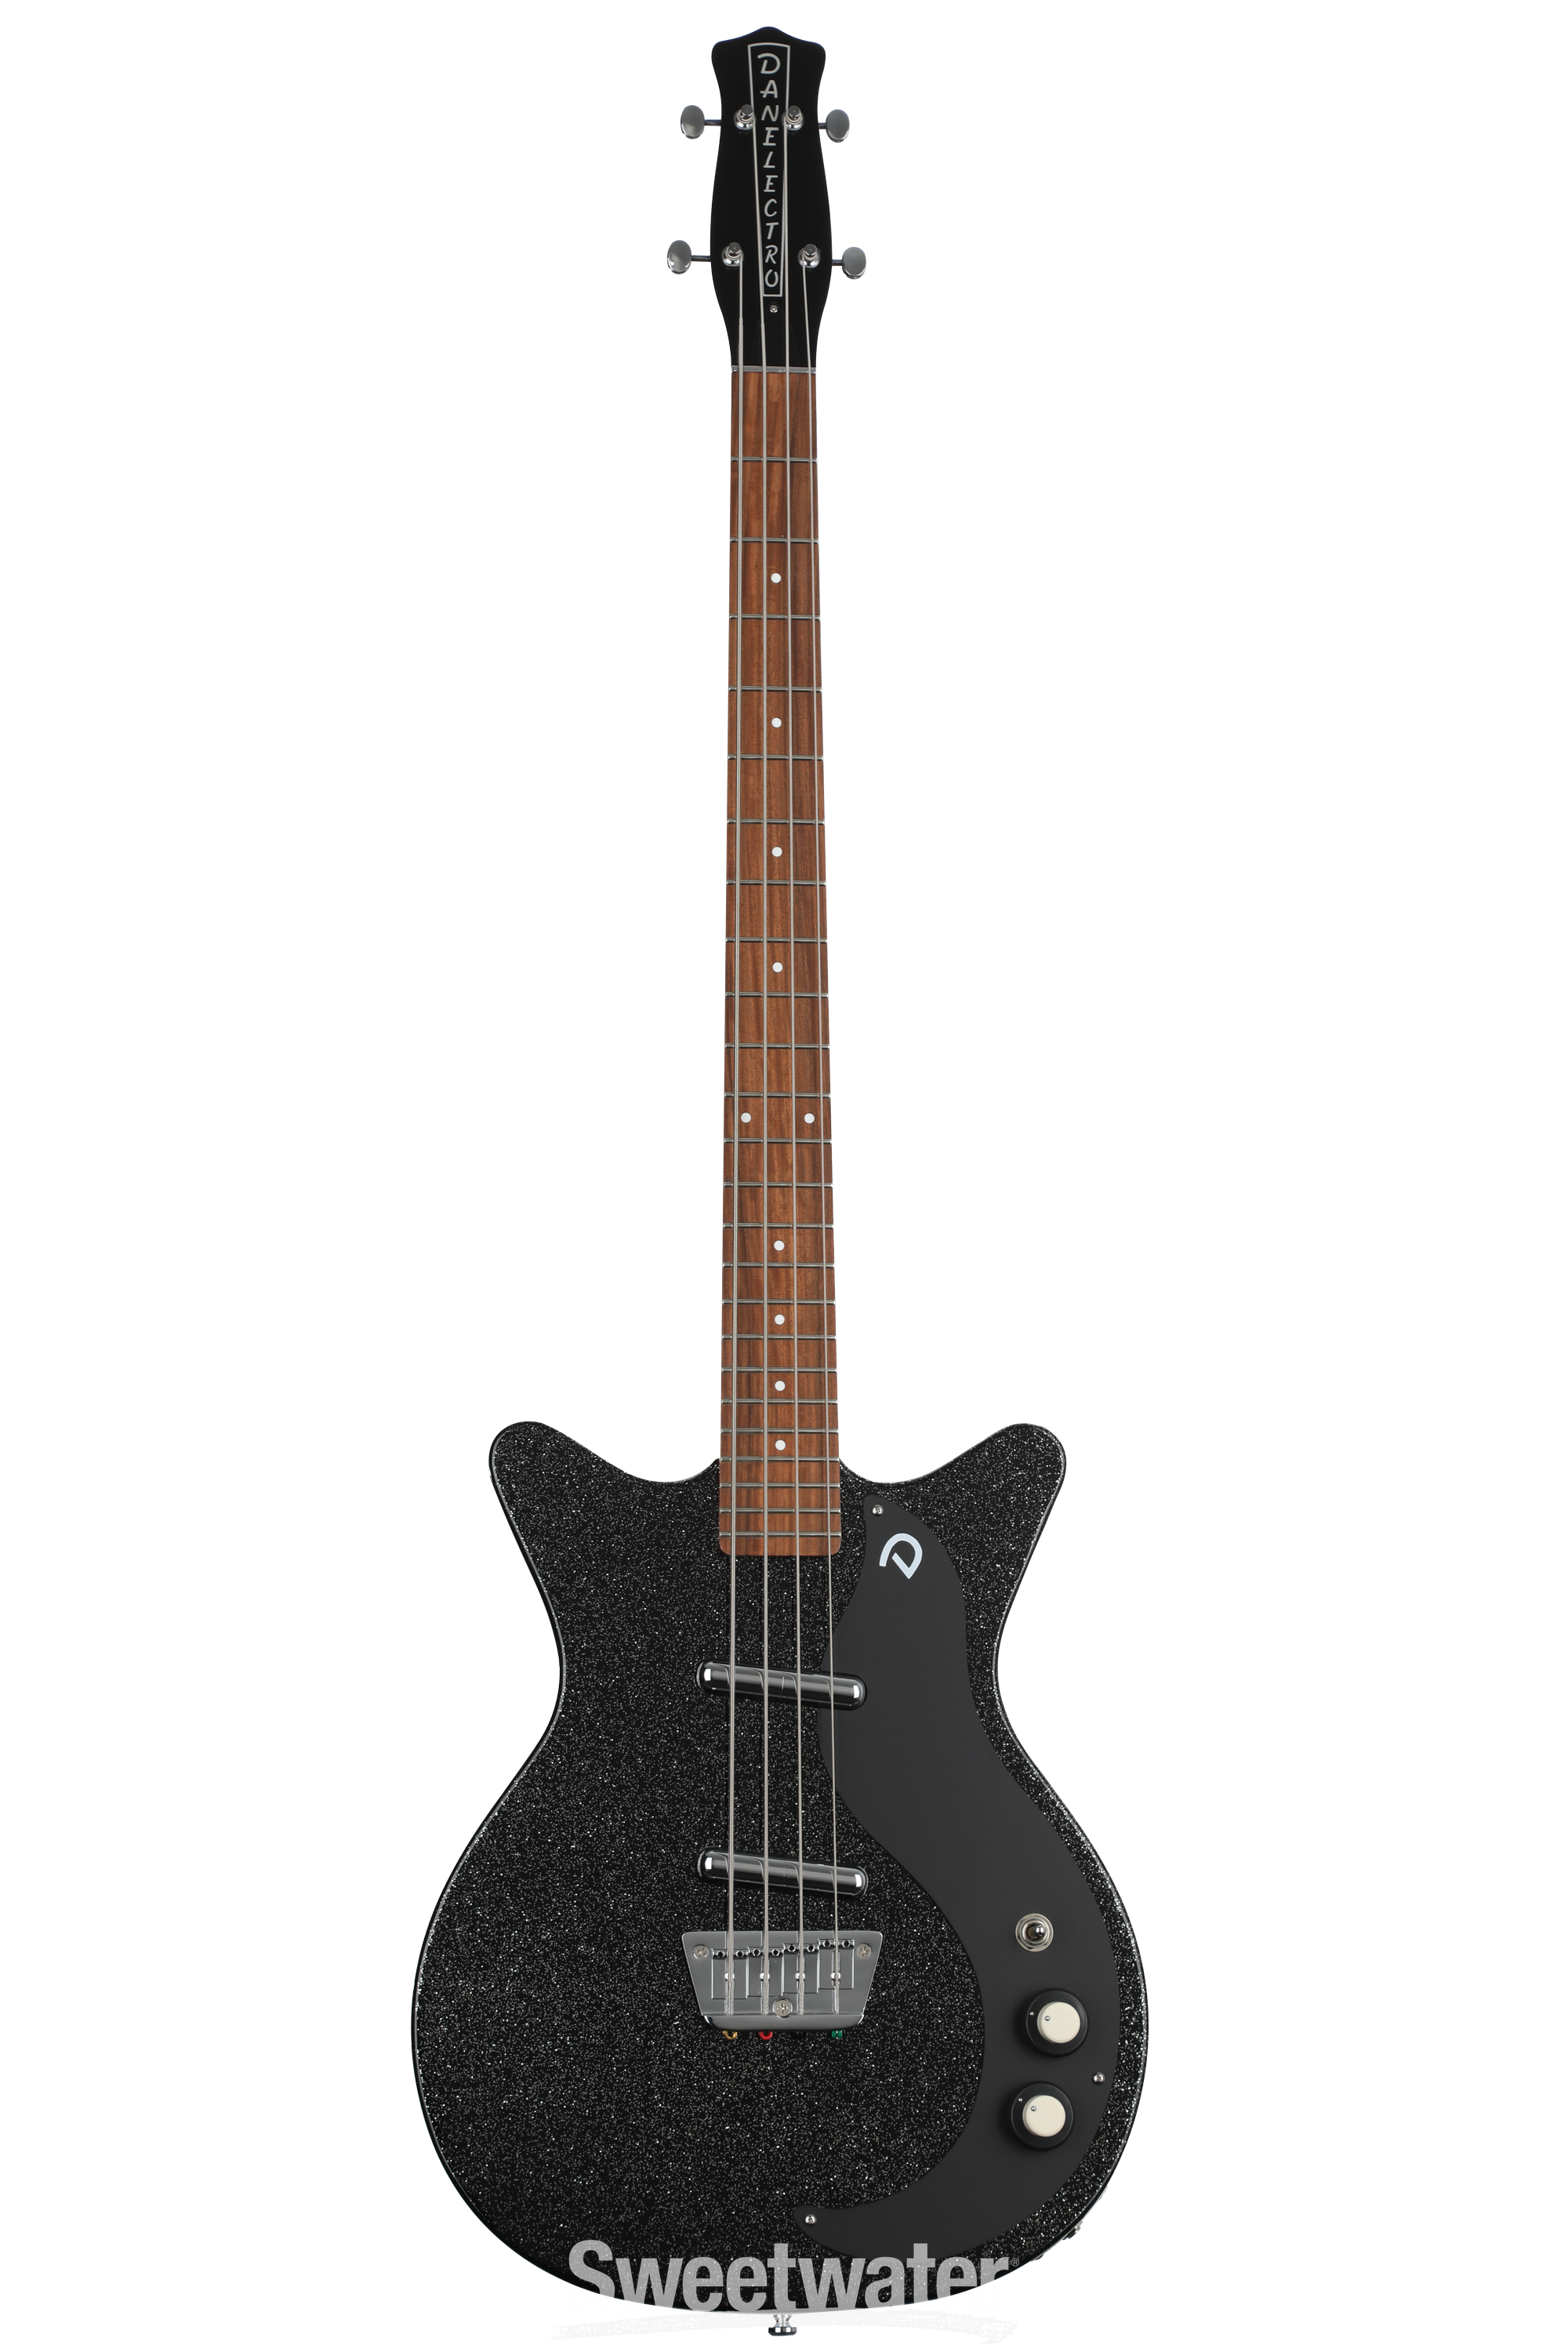 Danelectro '59DC Short Scale Bass Guitar - Black Metalflake